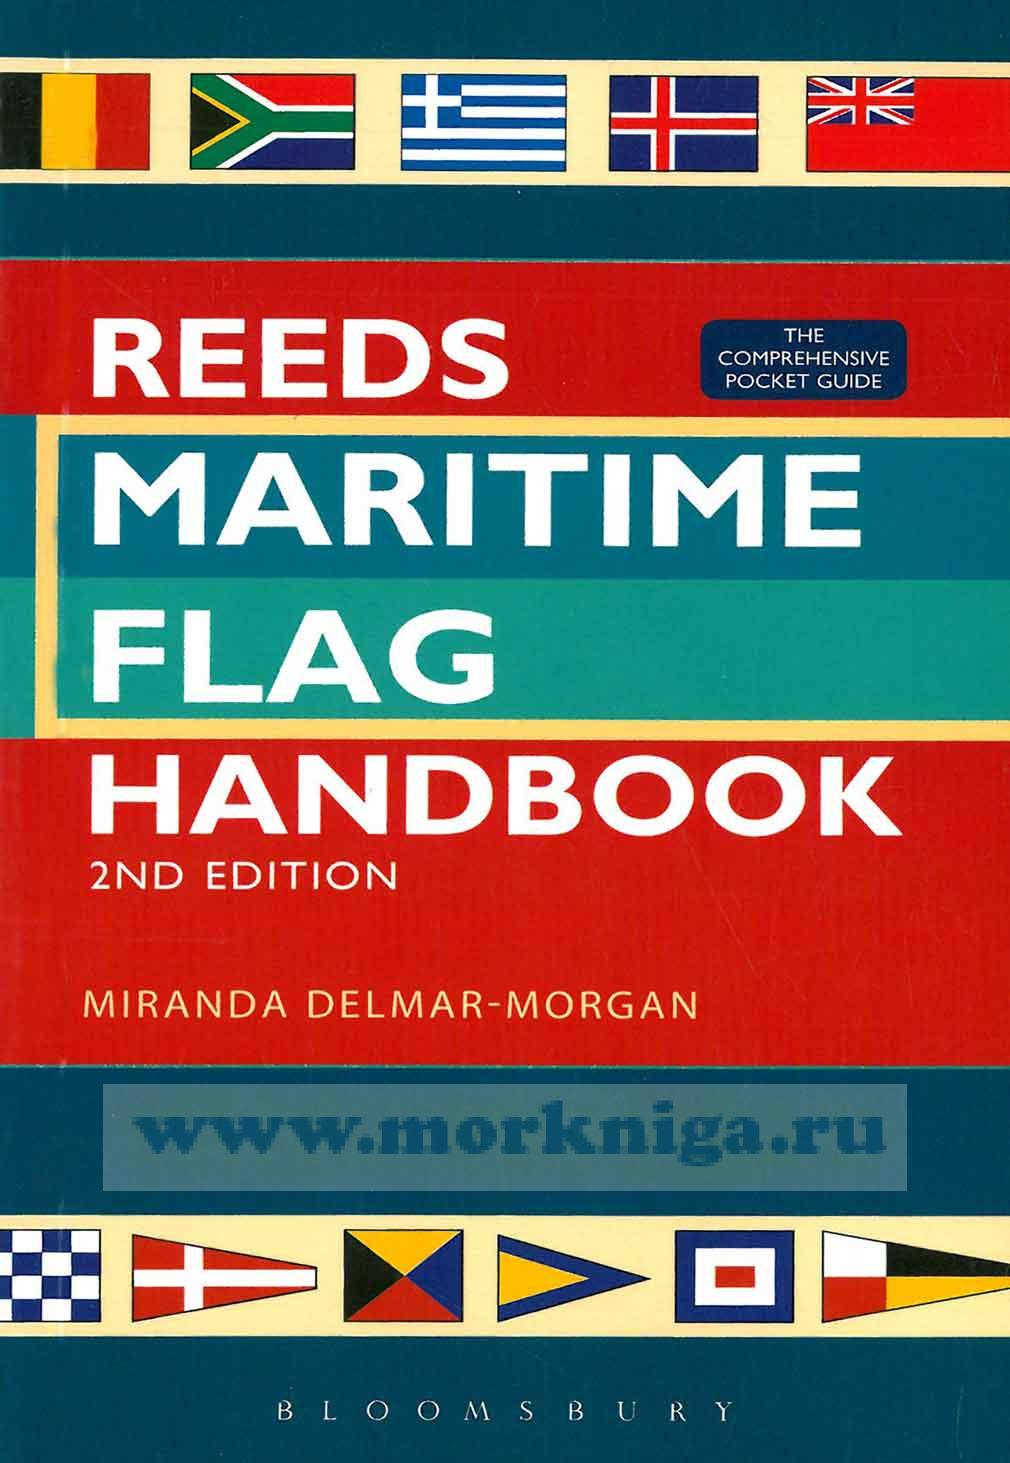 Reeds Maritime flag handbook